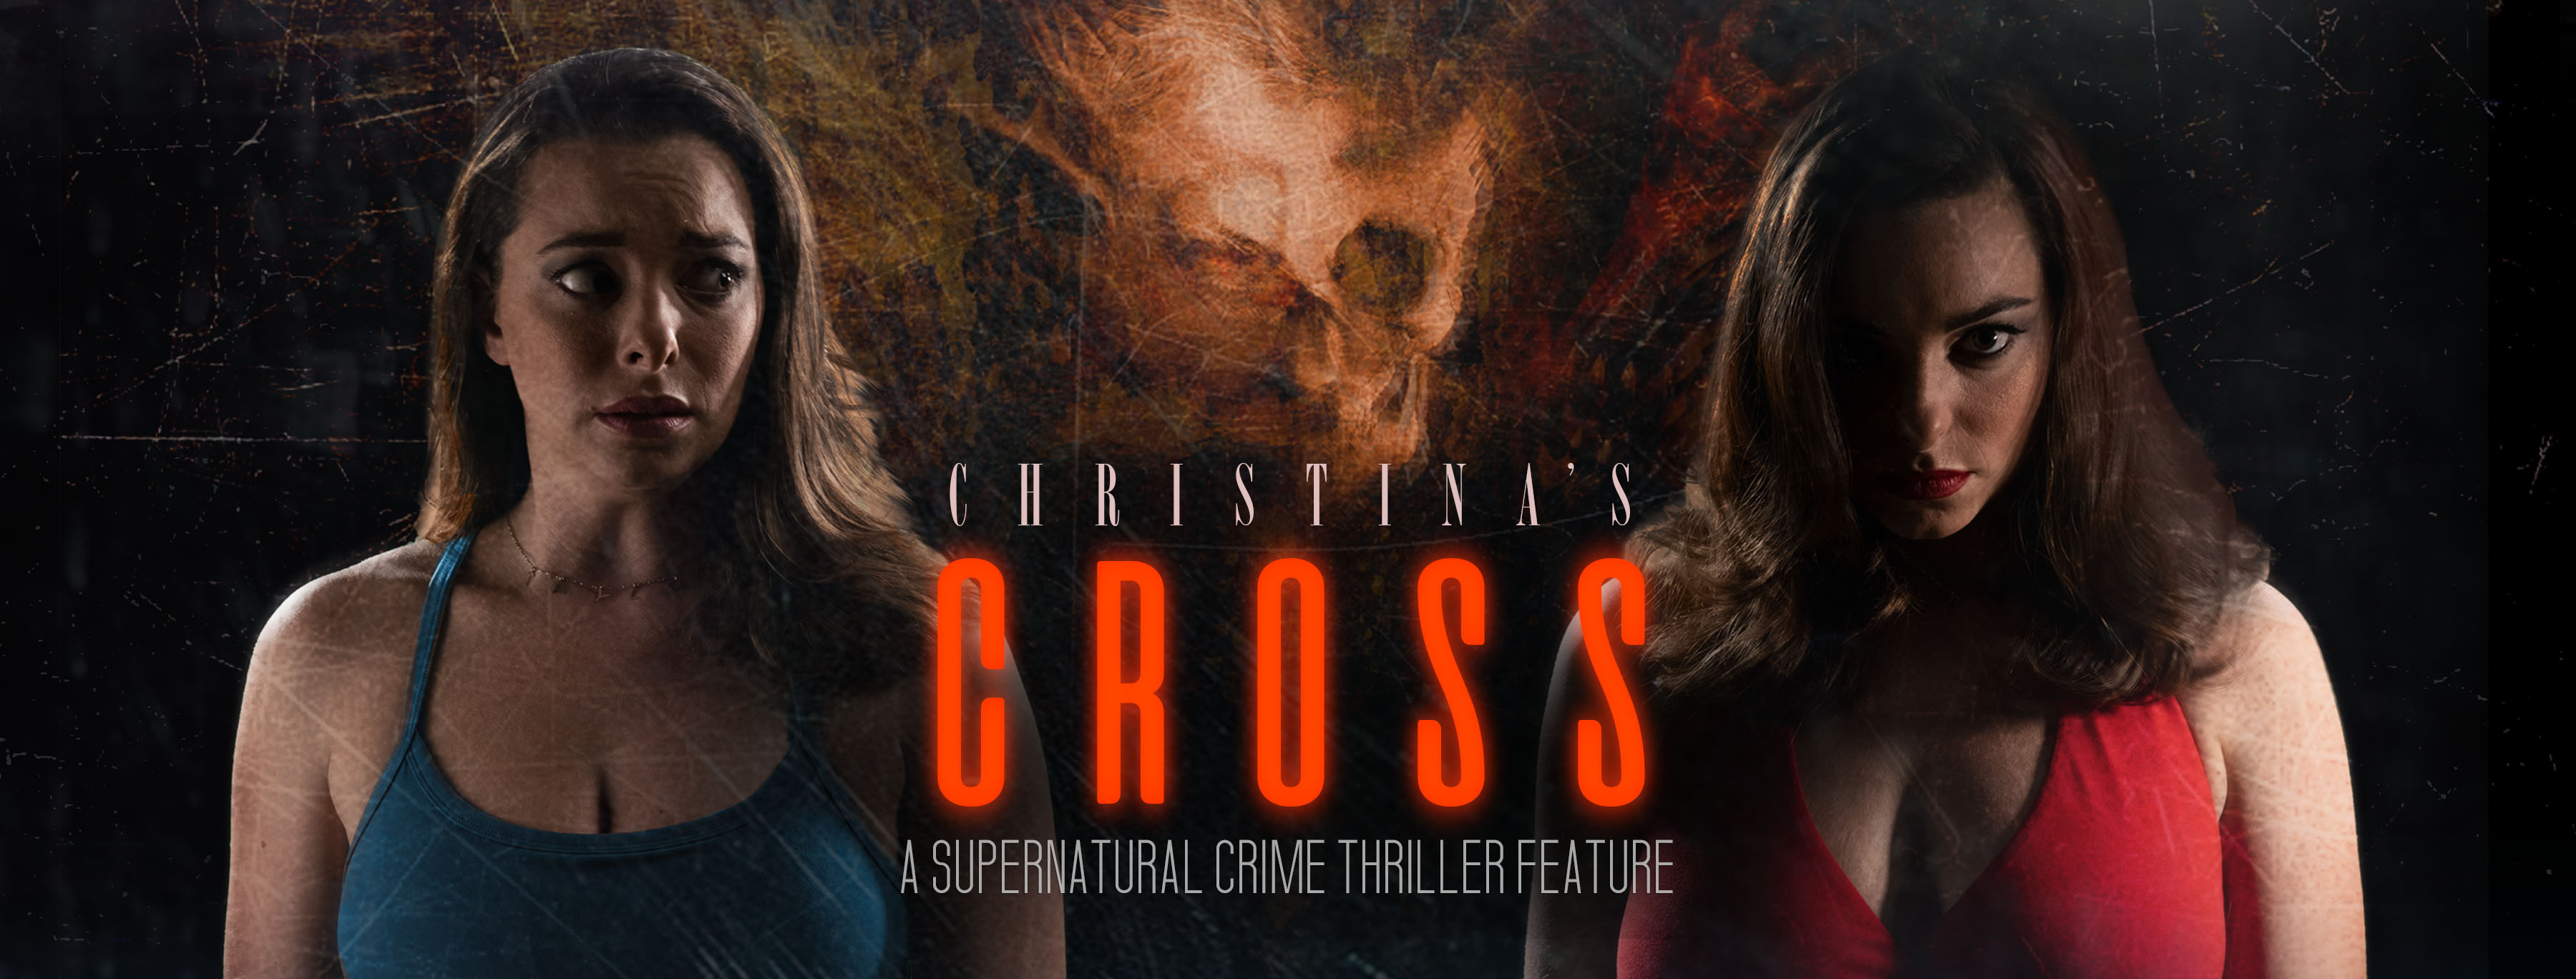 Christina's Cross